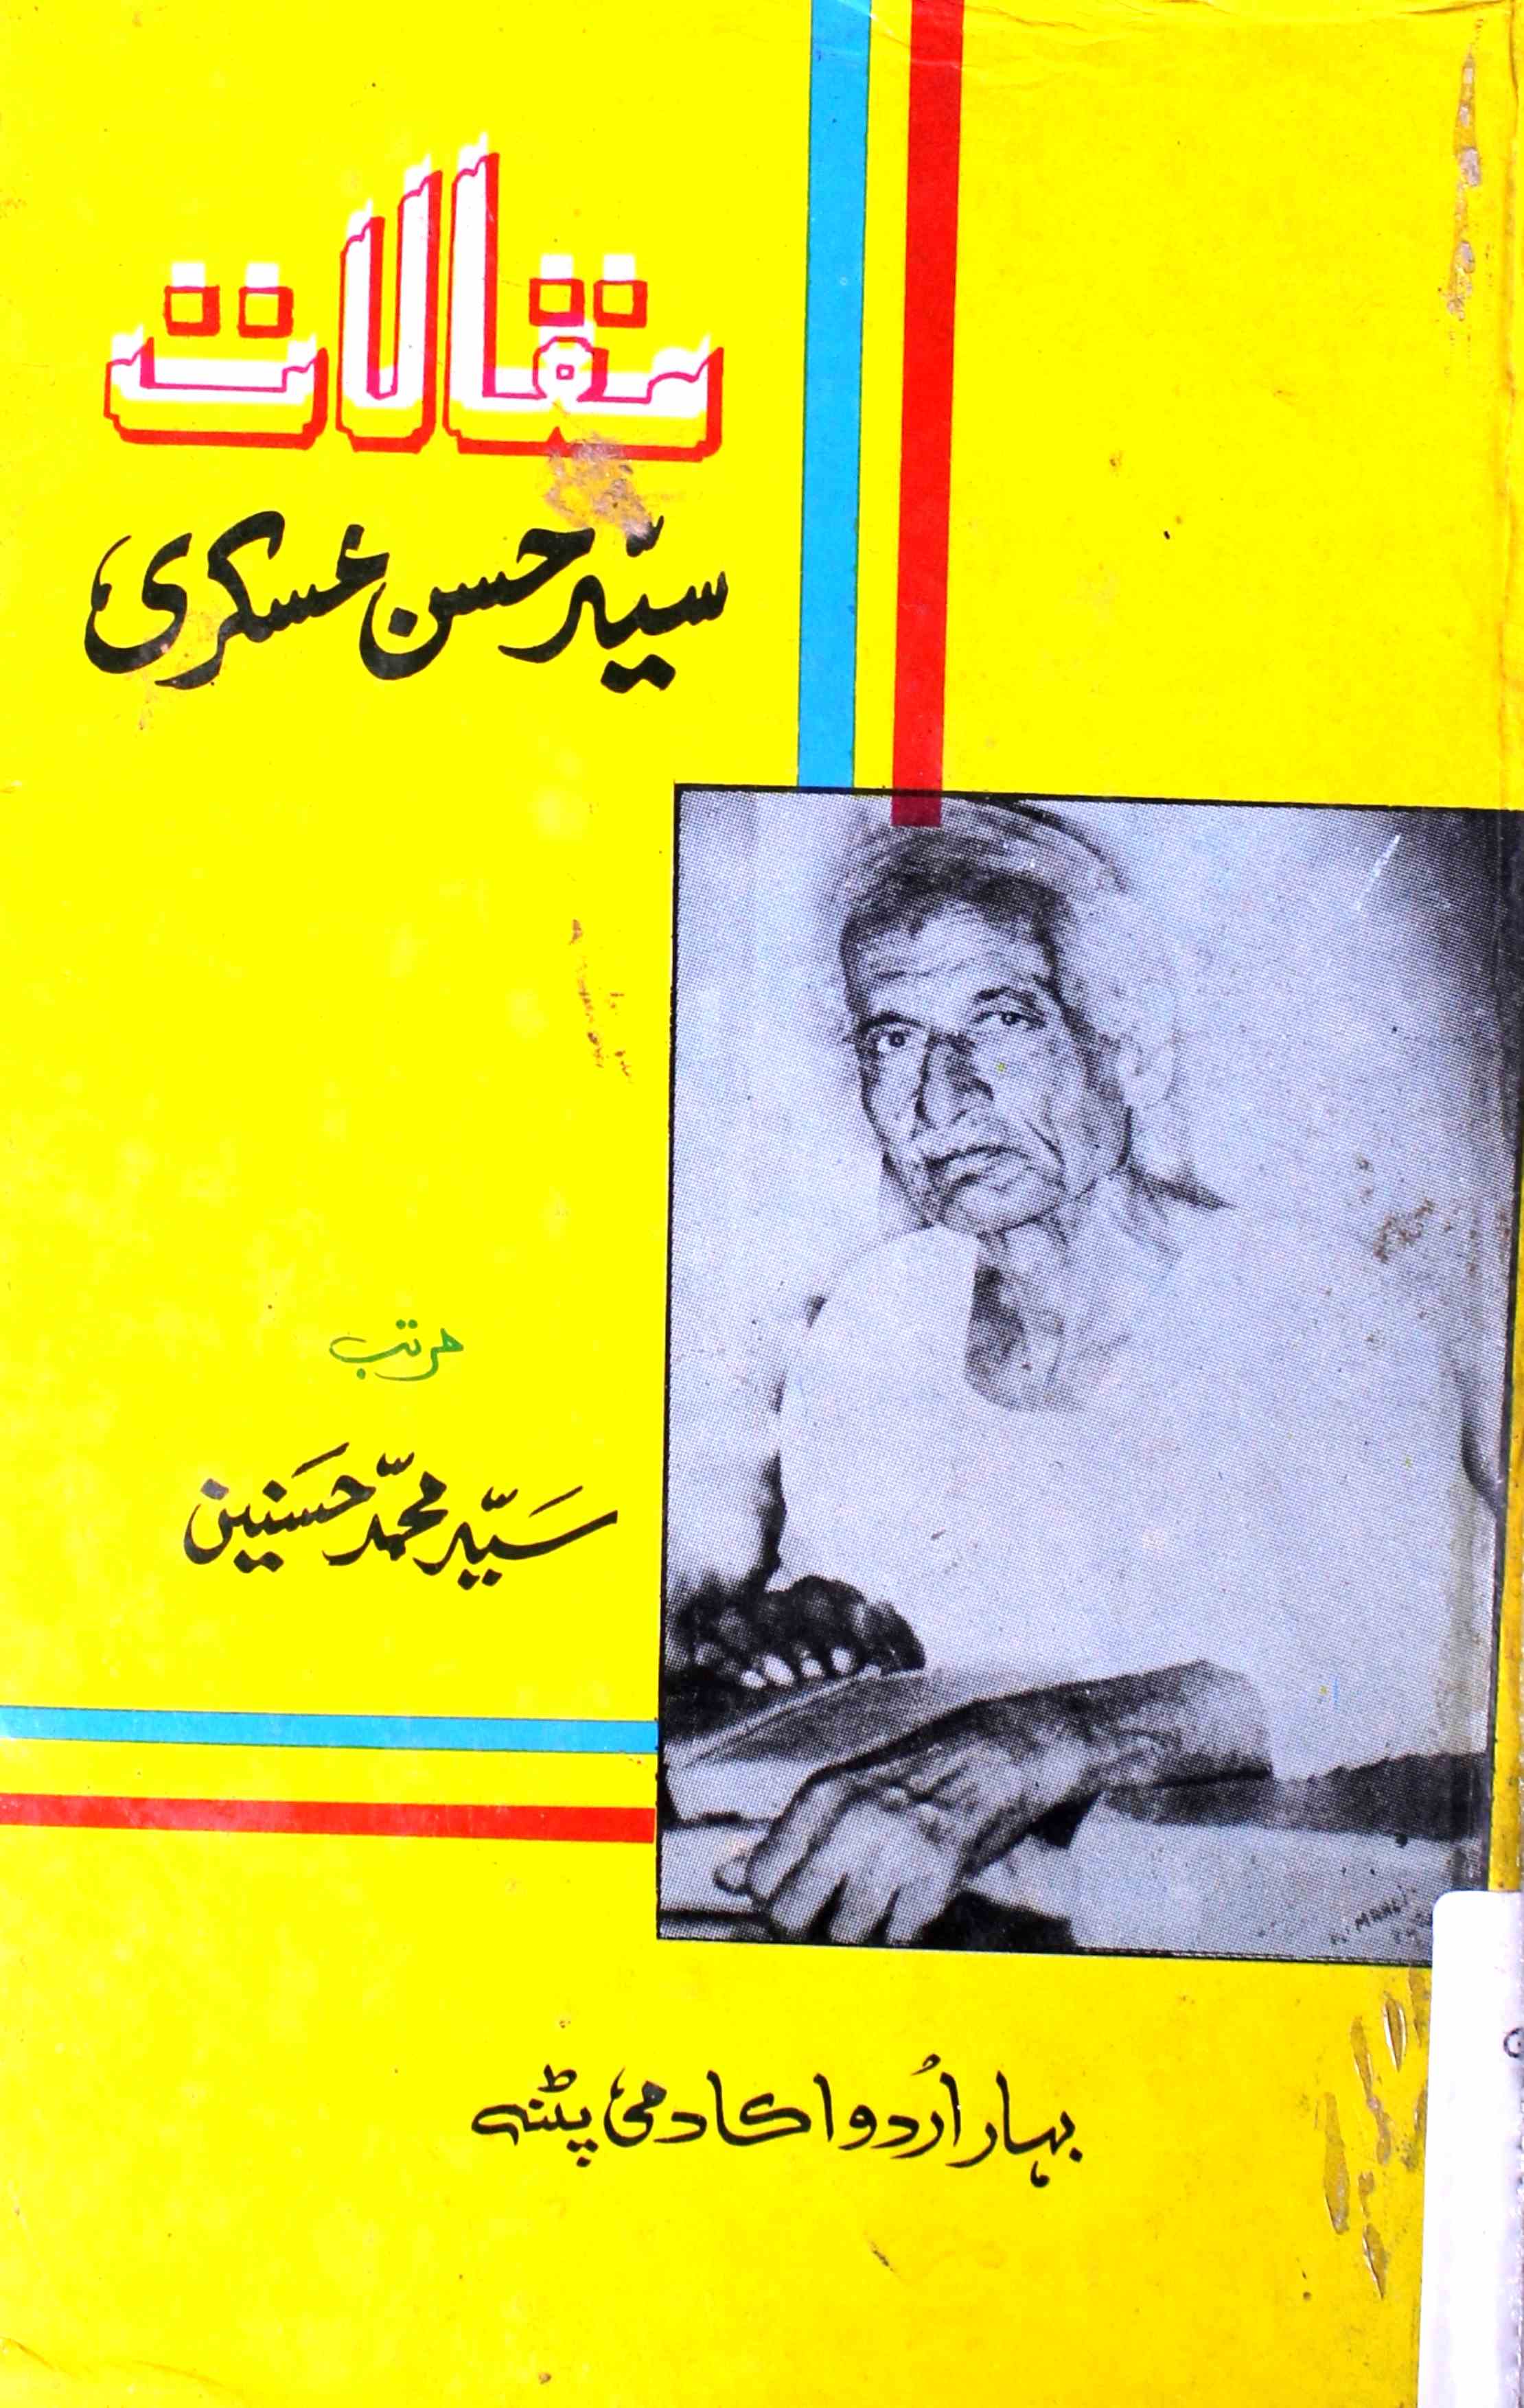 Maqalat-e-Sayyad Hasan Askari